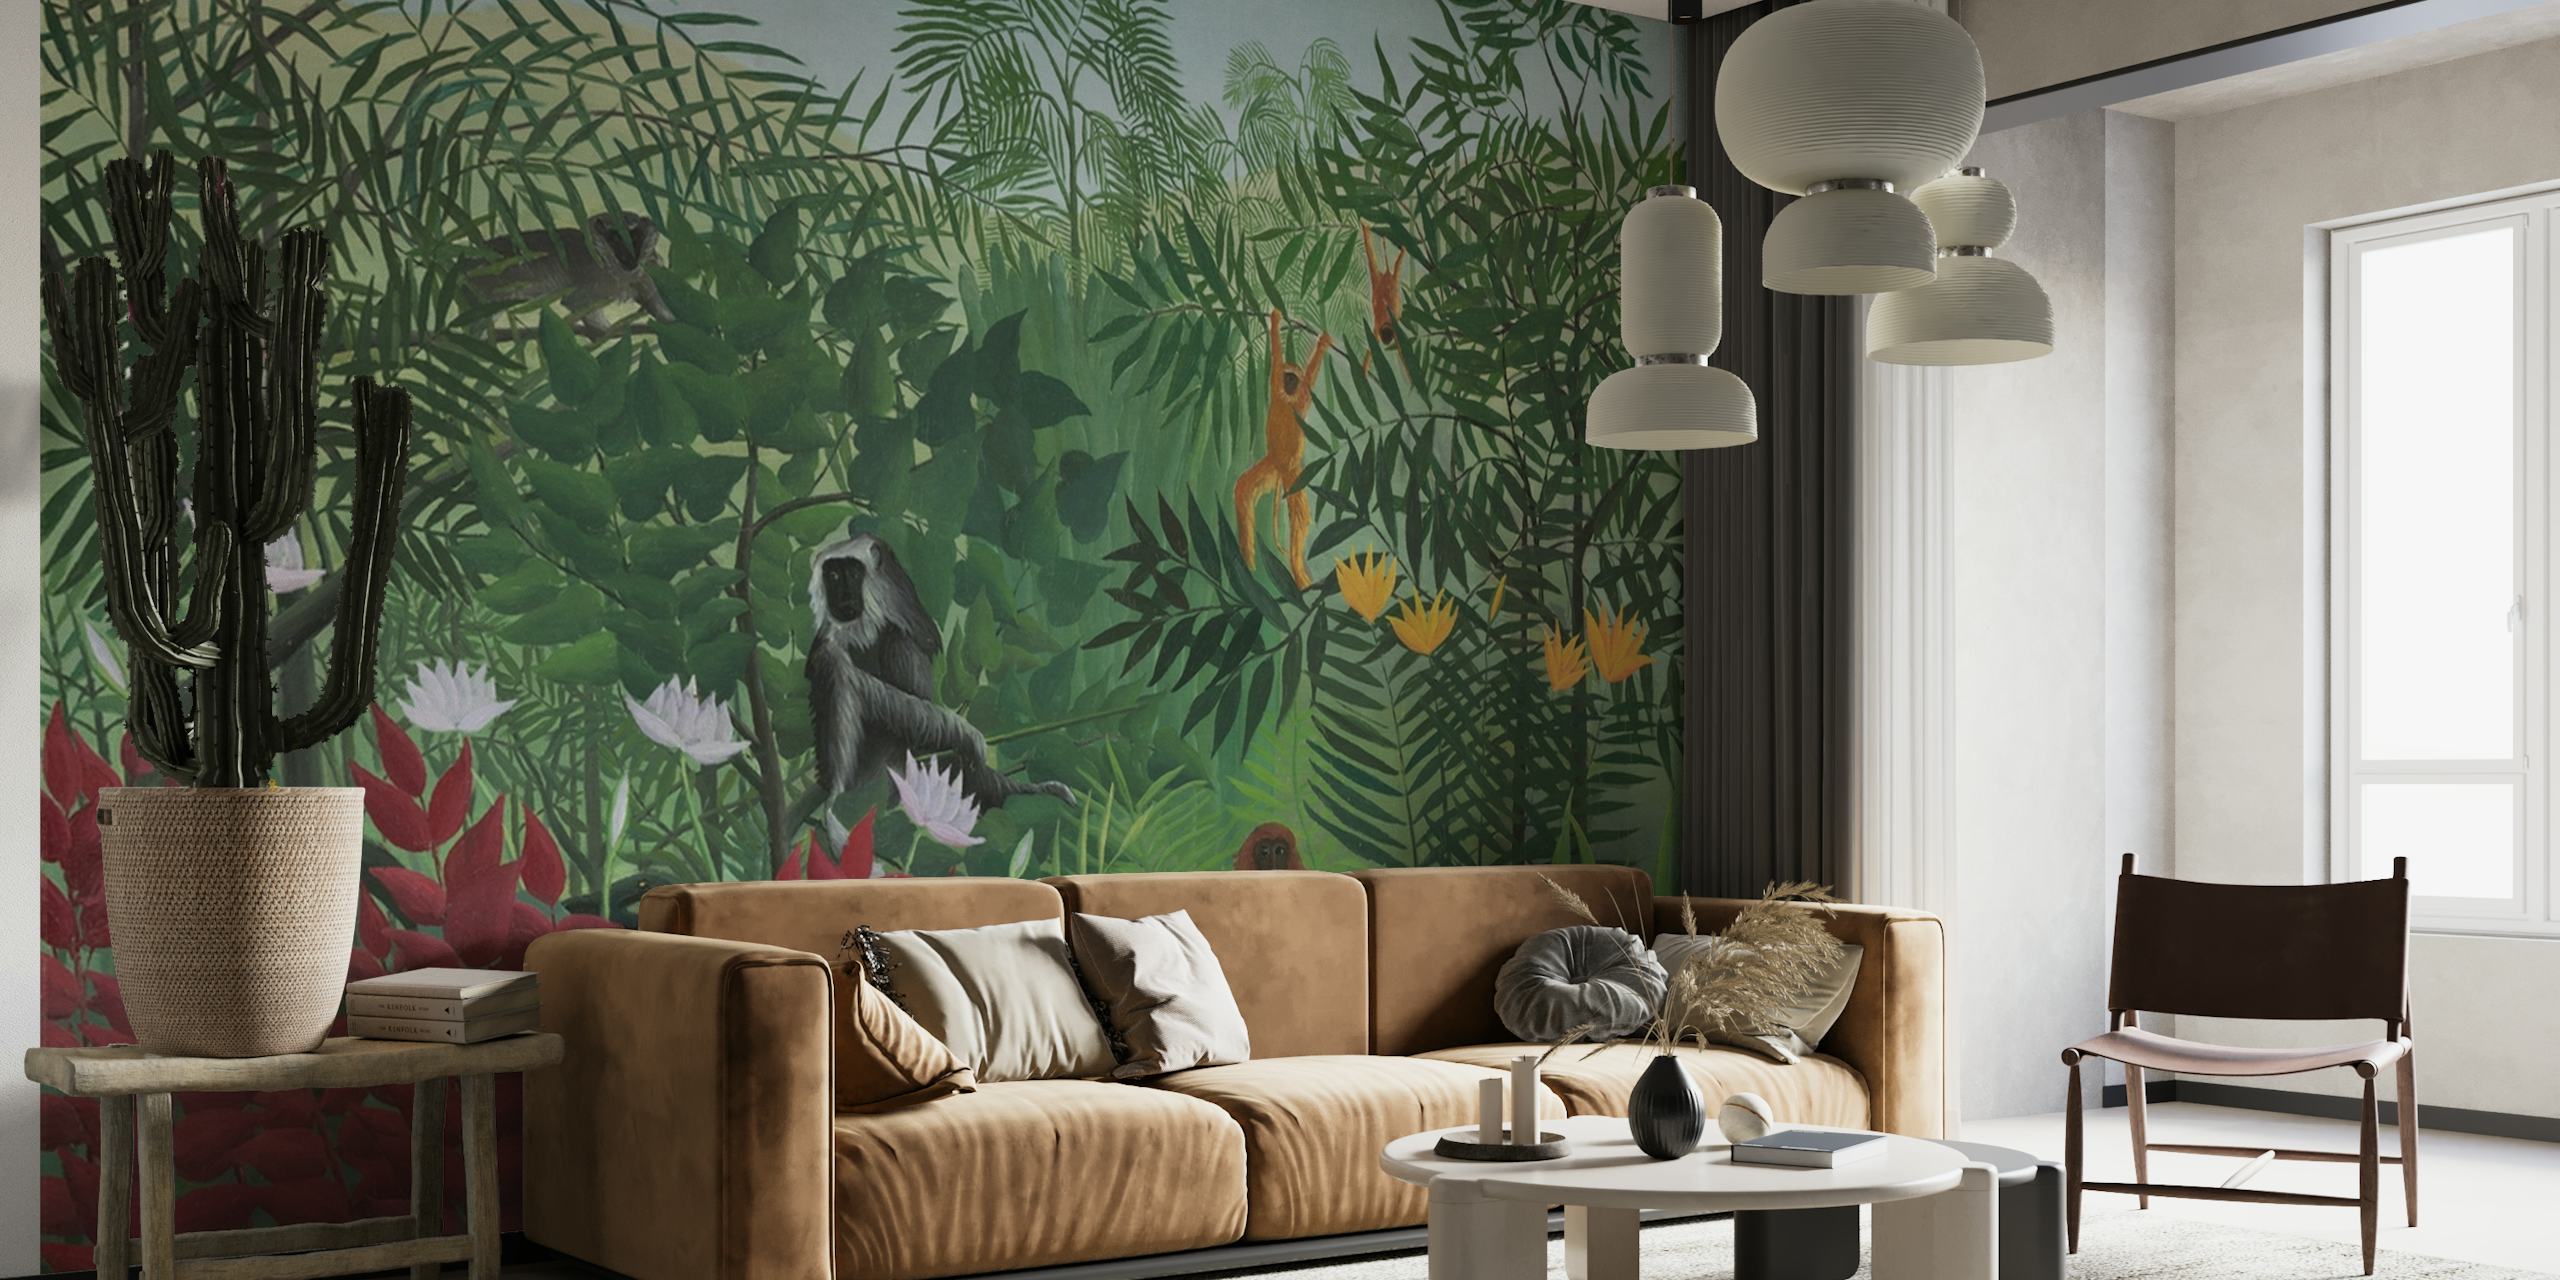 Wandbild mit einer tropischen Waldszene mit Affen, inspiriert vom Kunststil Henri Rousseaus.